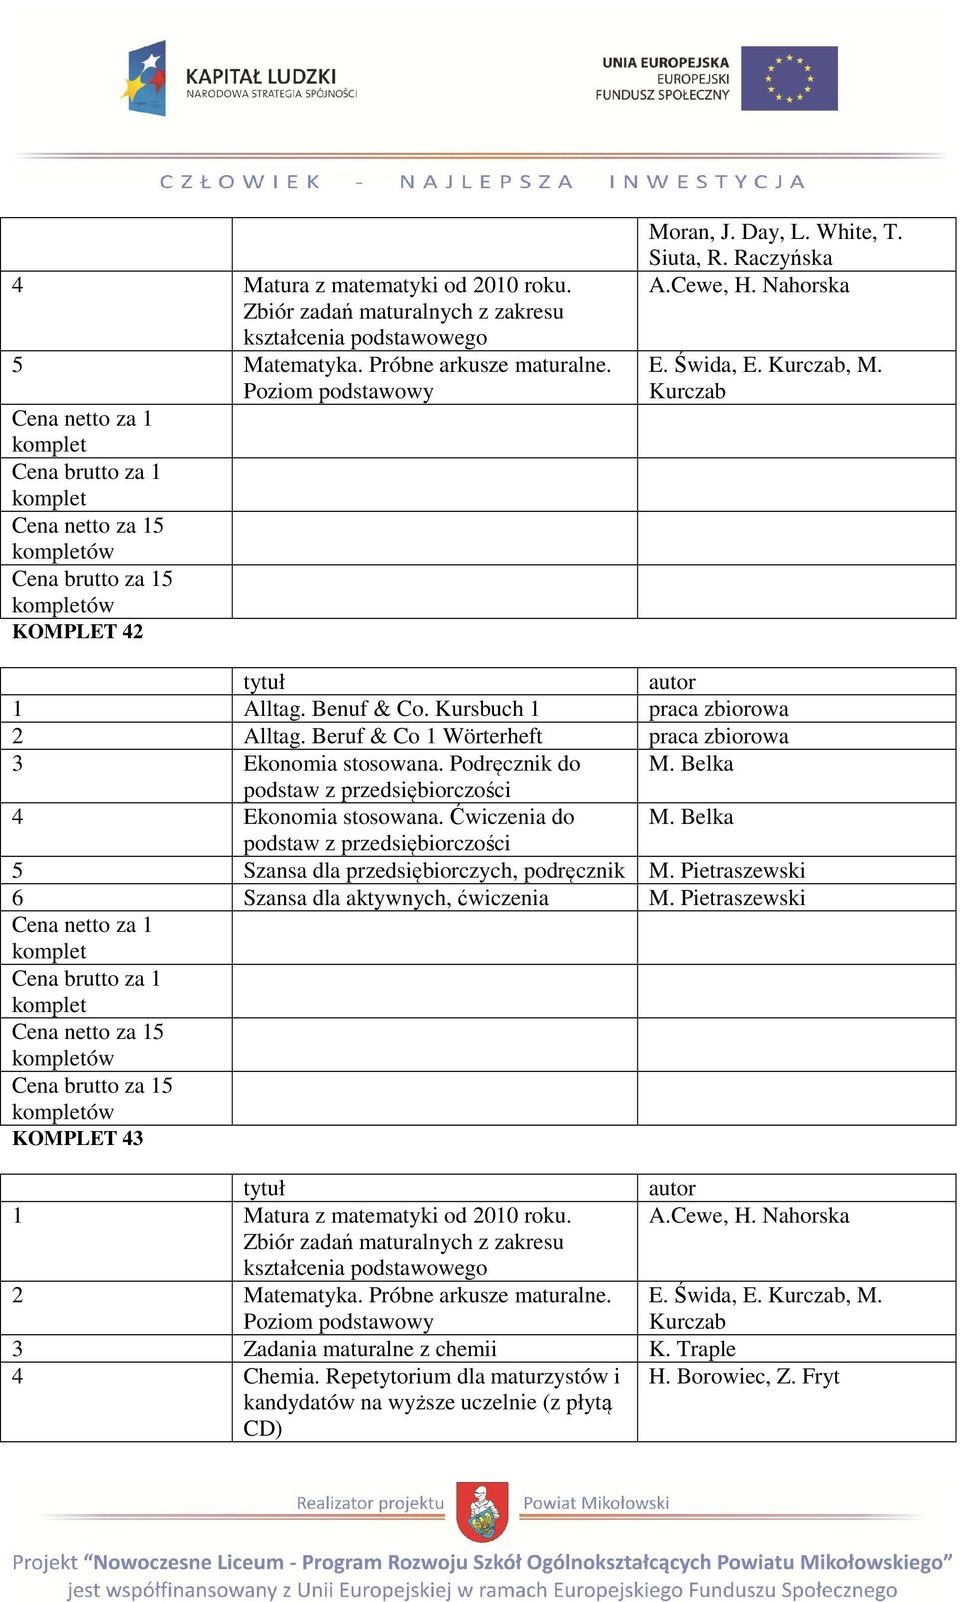 Ćwiczenia do M. Belka podstaw z przedsiębiorczości 5 Szansa dla przedsiębiorczych, podręcznik M. Pietraszewski 6 Szansa dla aktywnych, M.